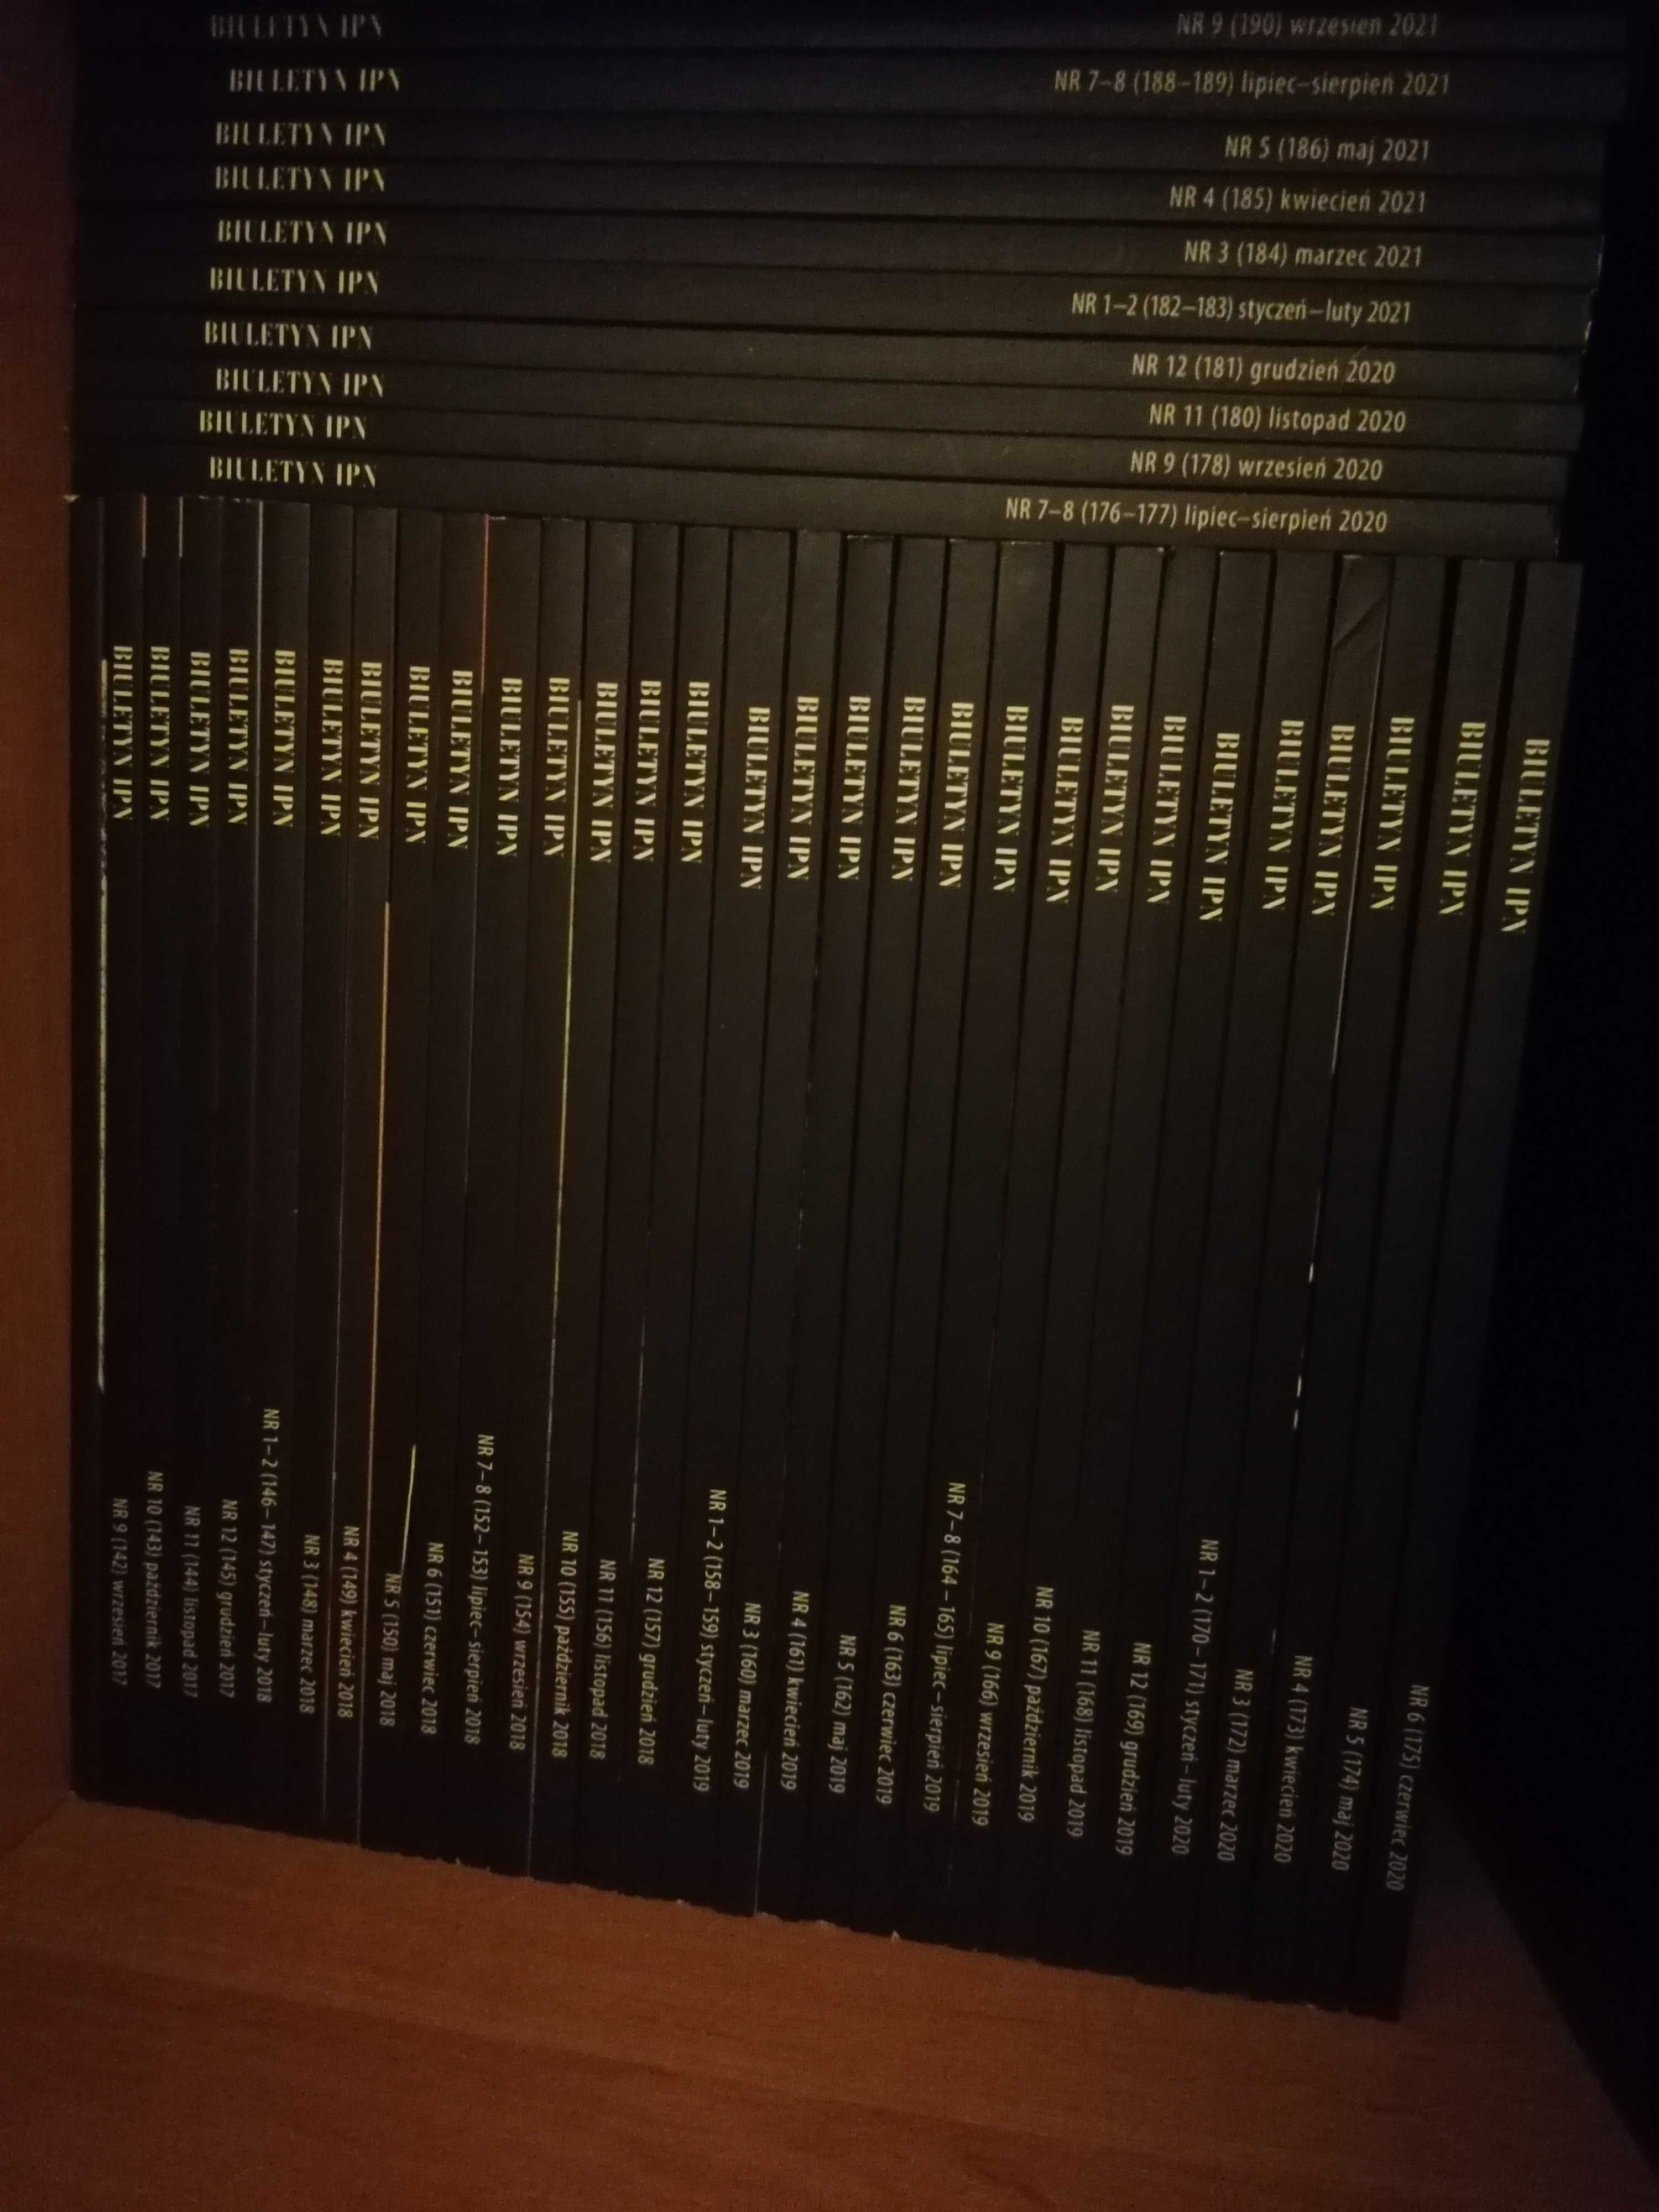 Biuletyn IPN - 29 numerów wraz z płytami